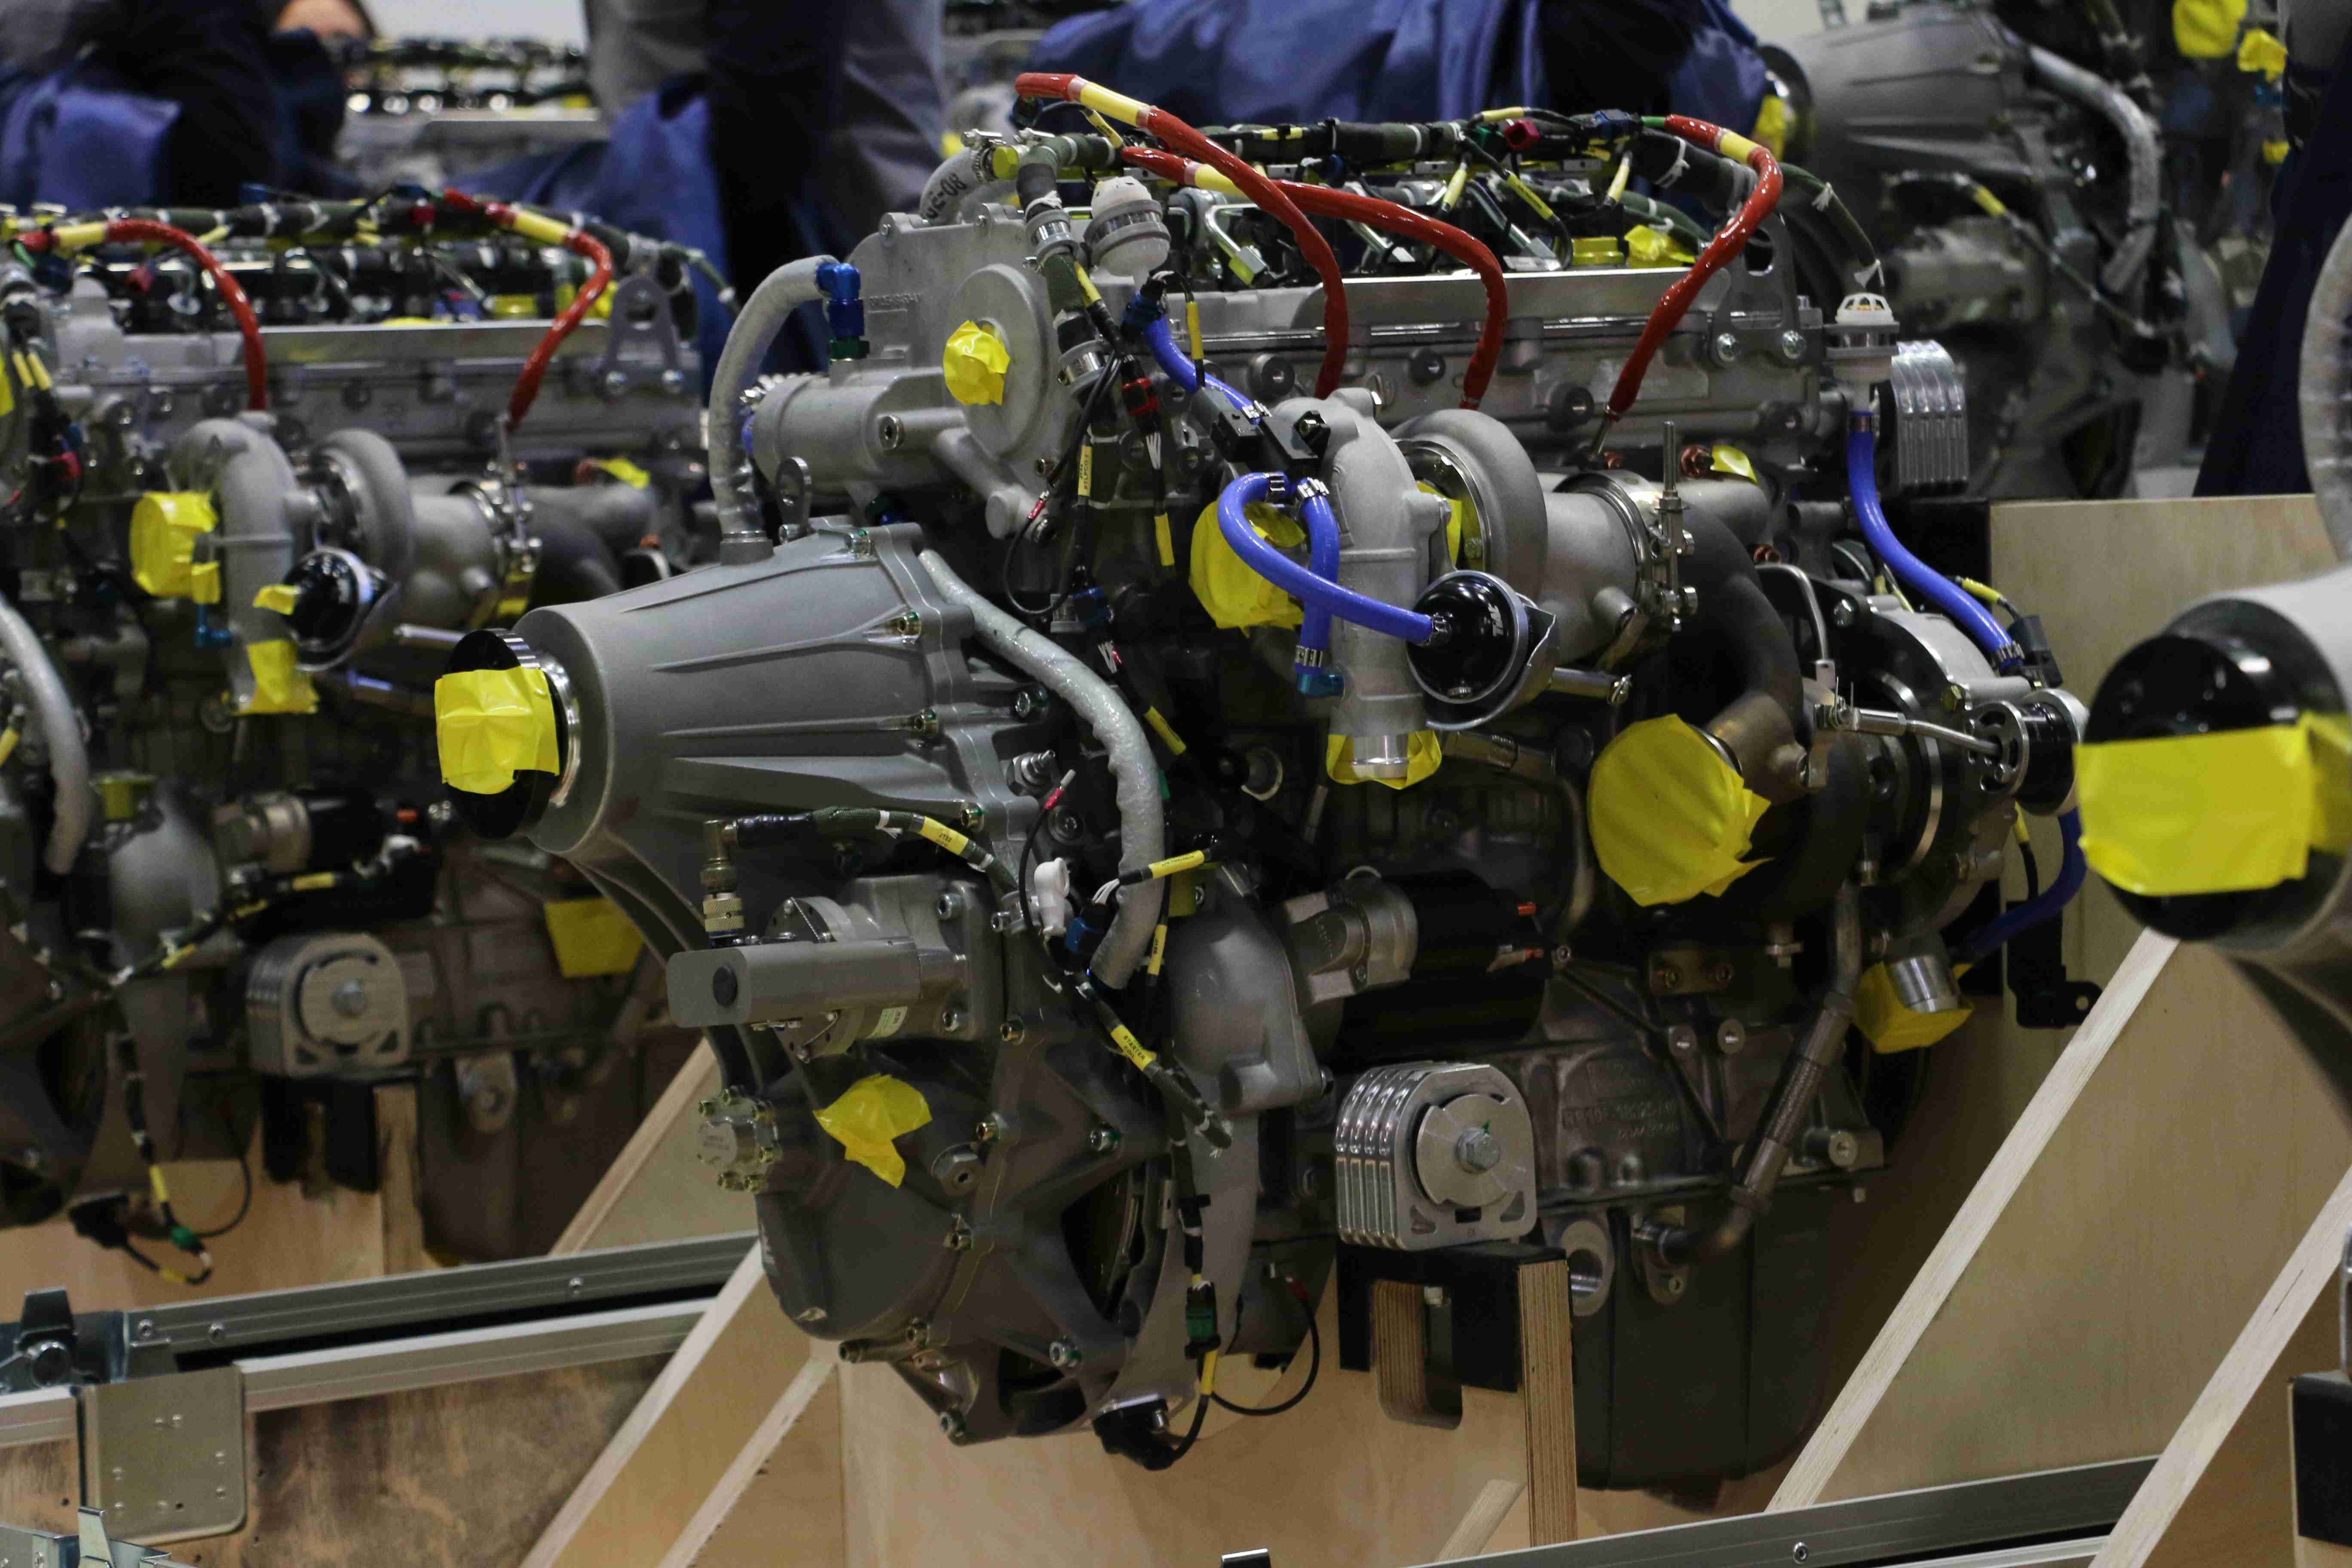 Türkiye'nin ilk turbodizel havacılık motoru için teslim töreni